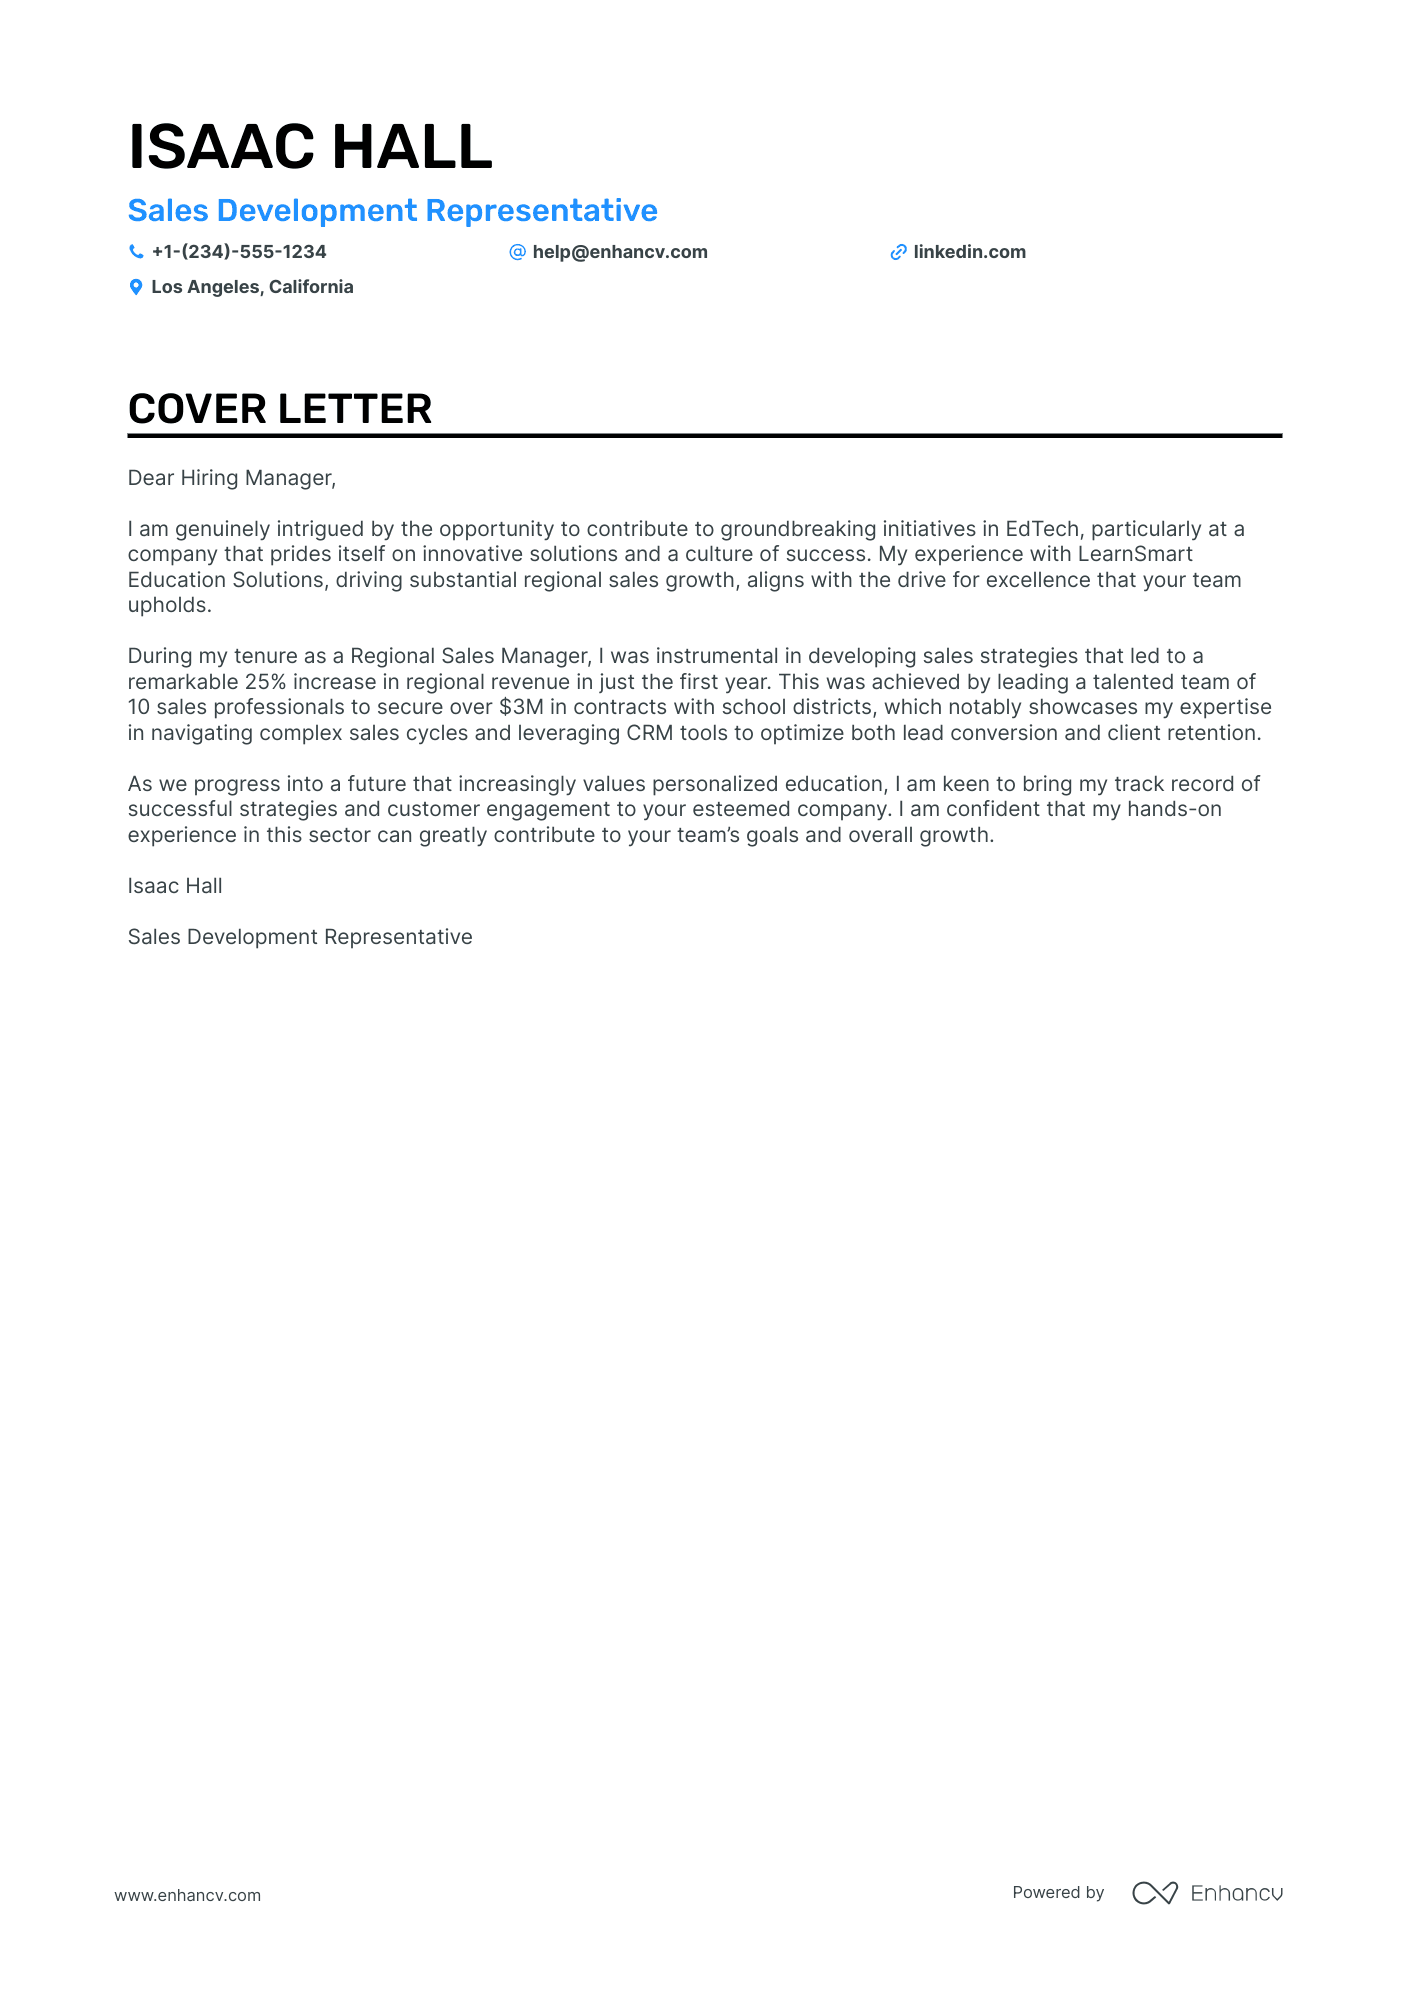 Transitioning Teacher cover letter